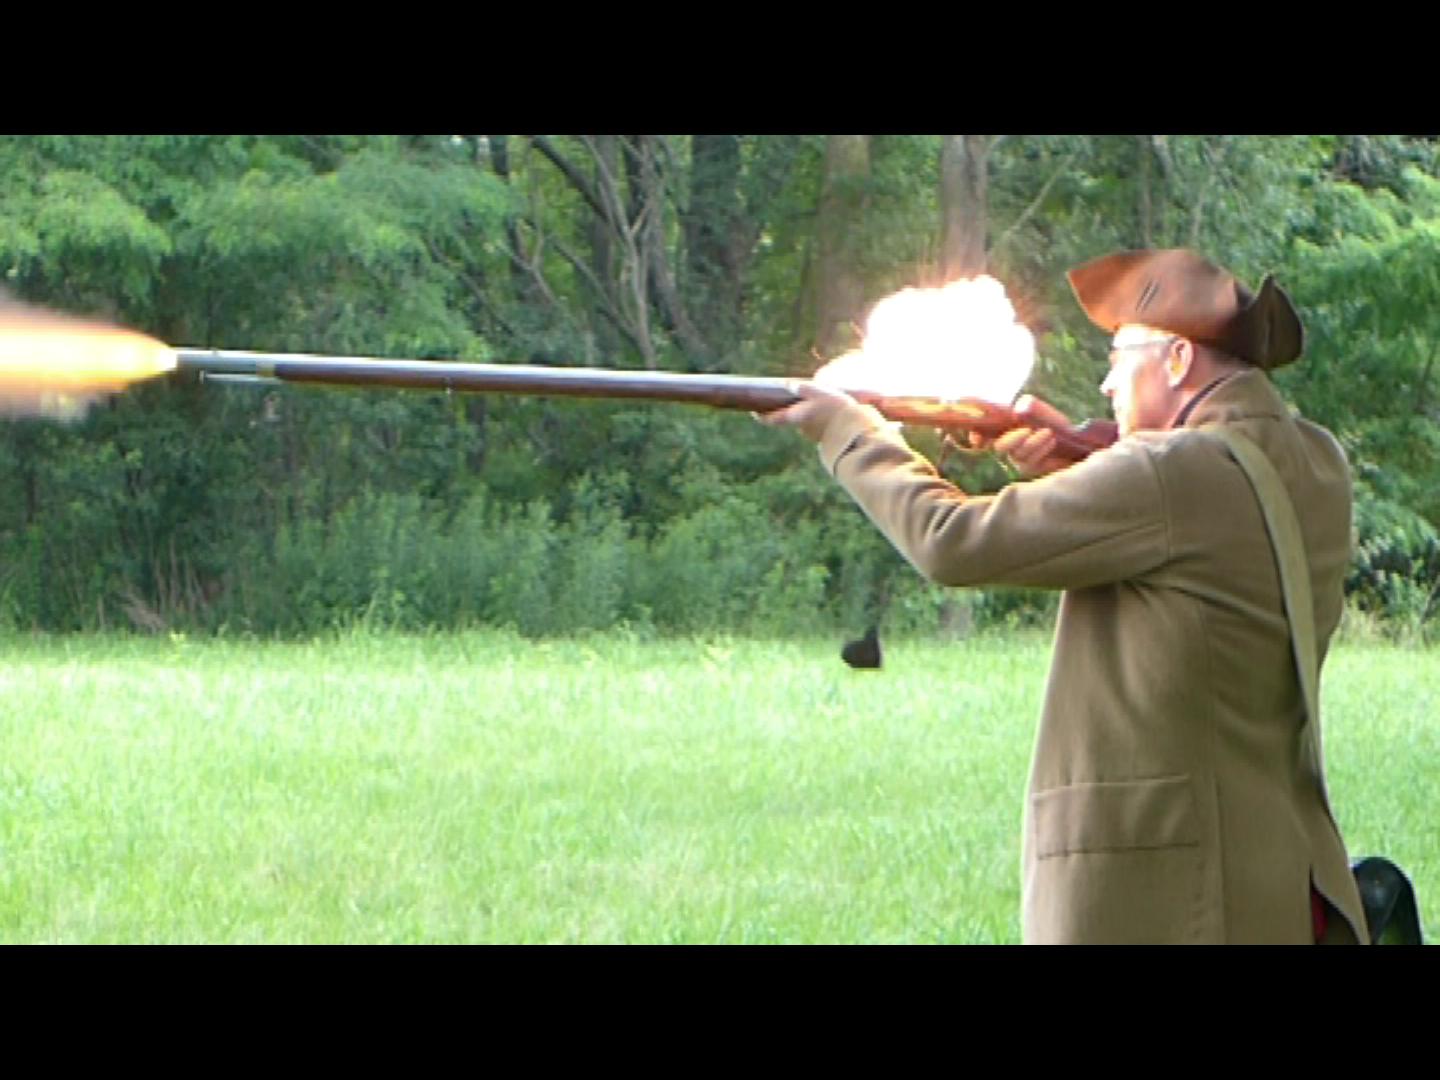 بندقية قديمة إطلاق تجريبي في مينتمان الحديقة الوطنية التاريخية